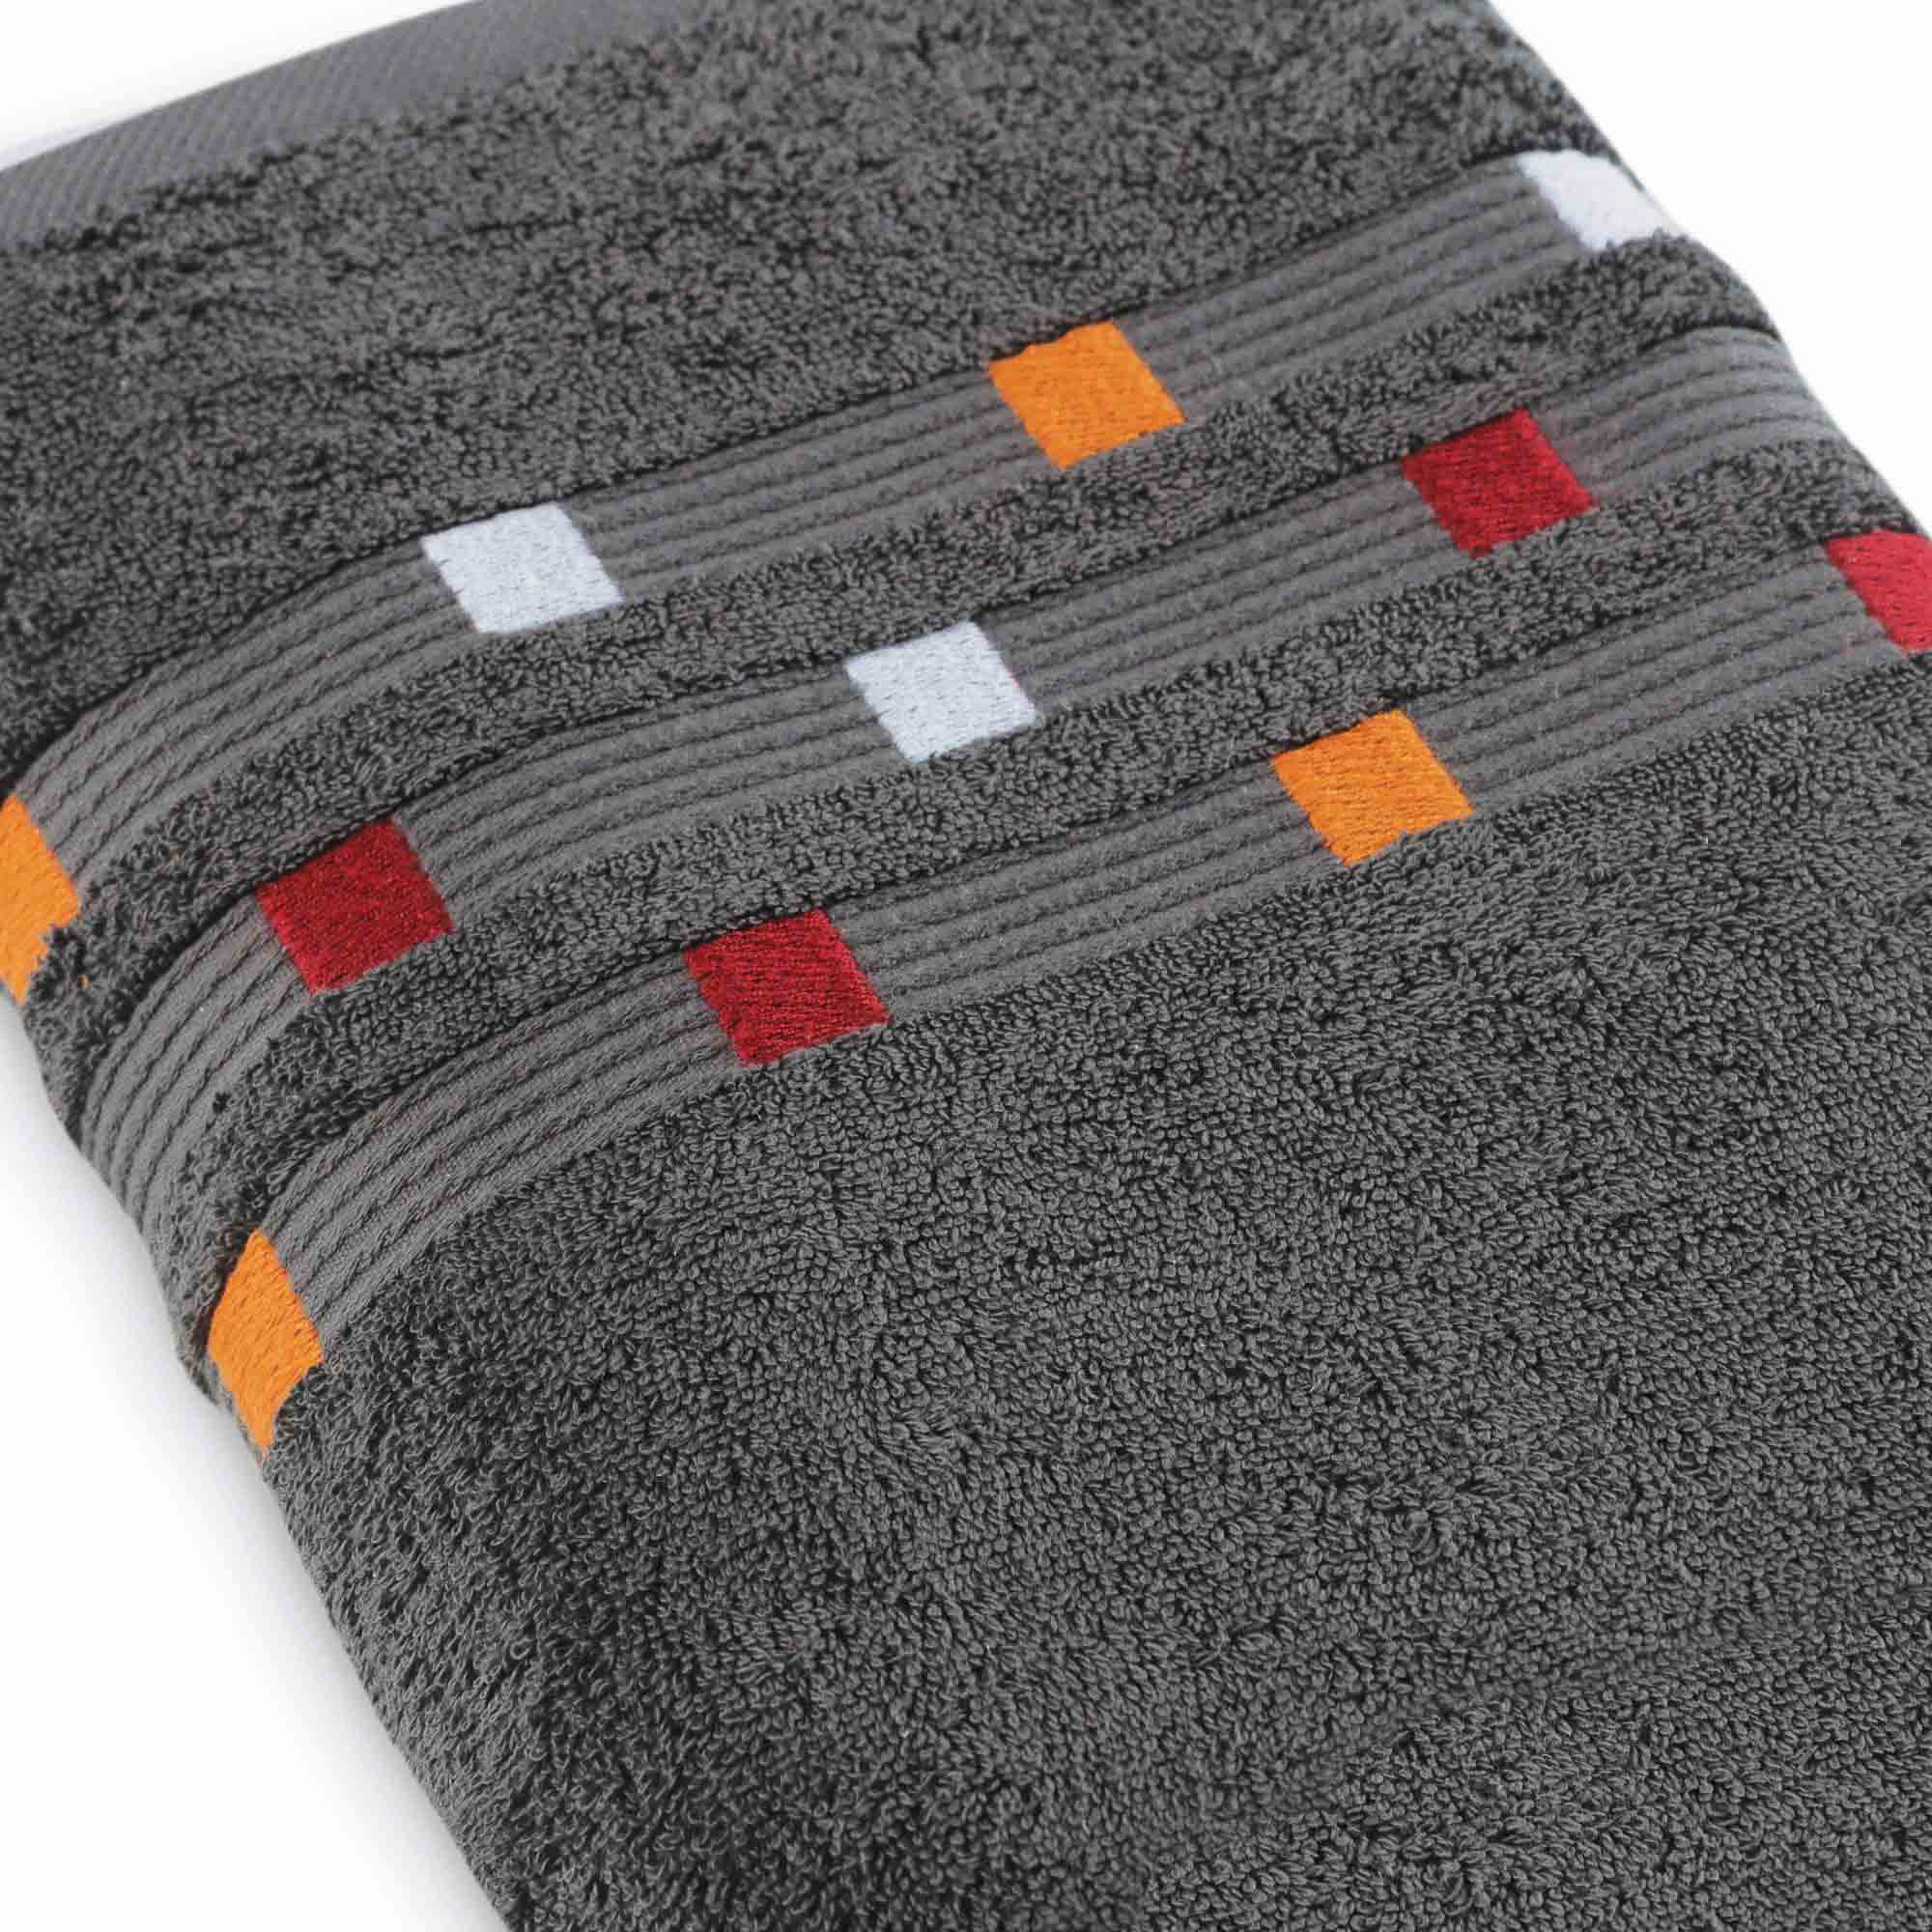 Panache - 6 Piece Towel Set